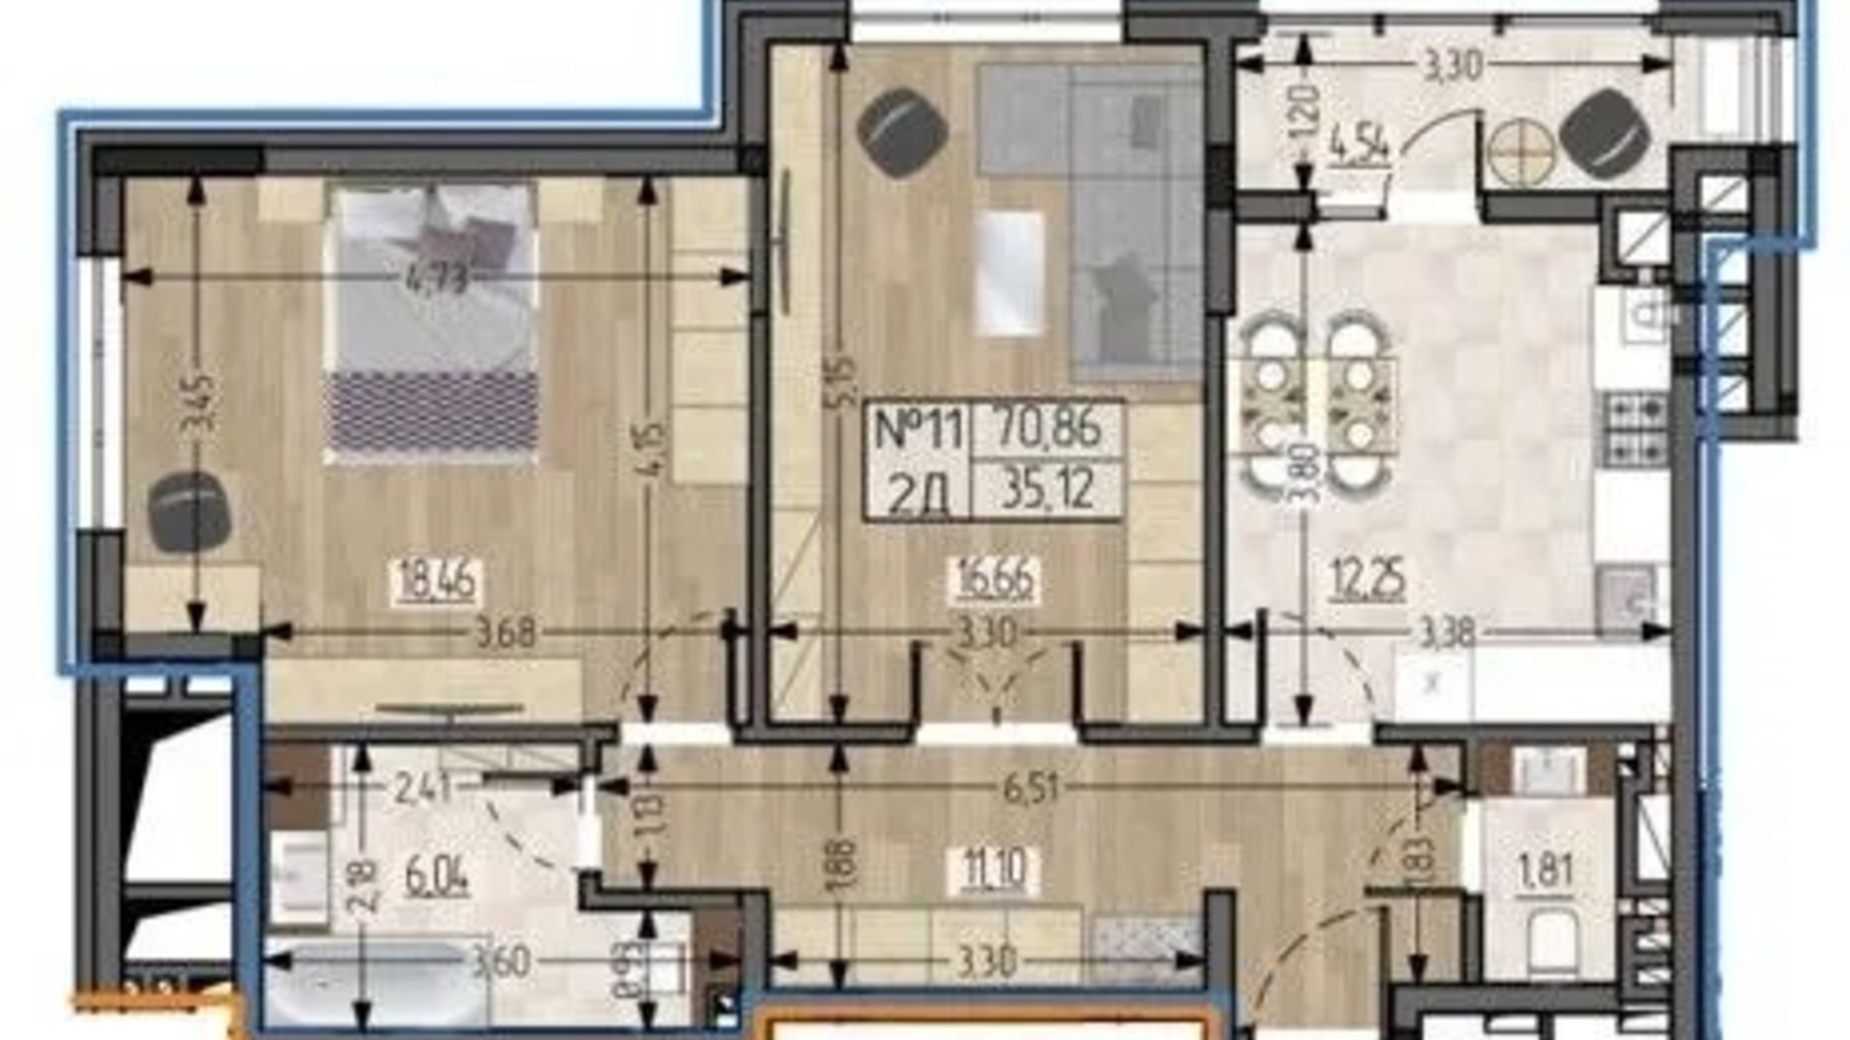 Планировка 2-комнатной квартиры в ЖСК Полетаева 70.86 м², фото 622459